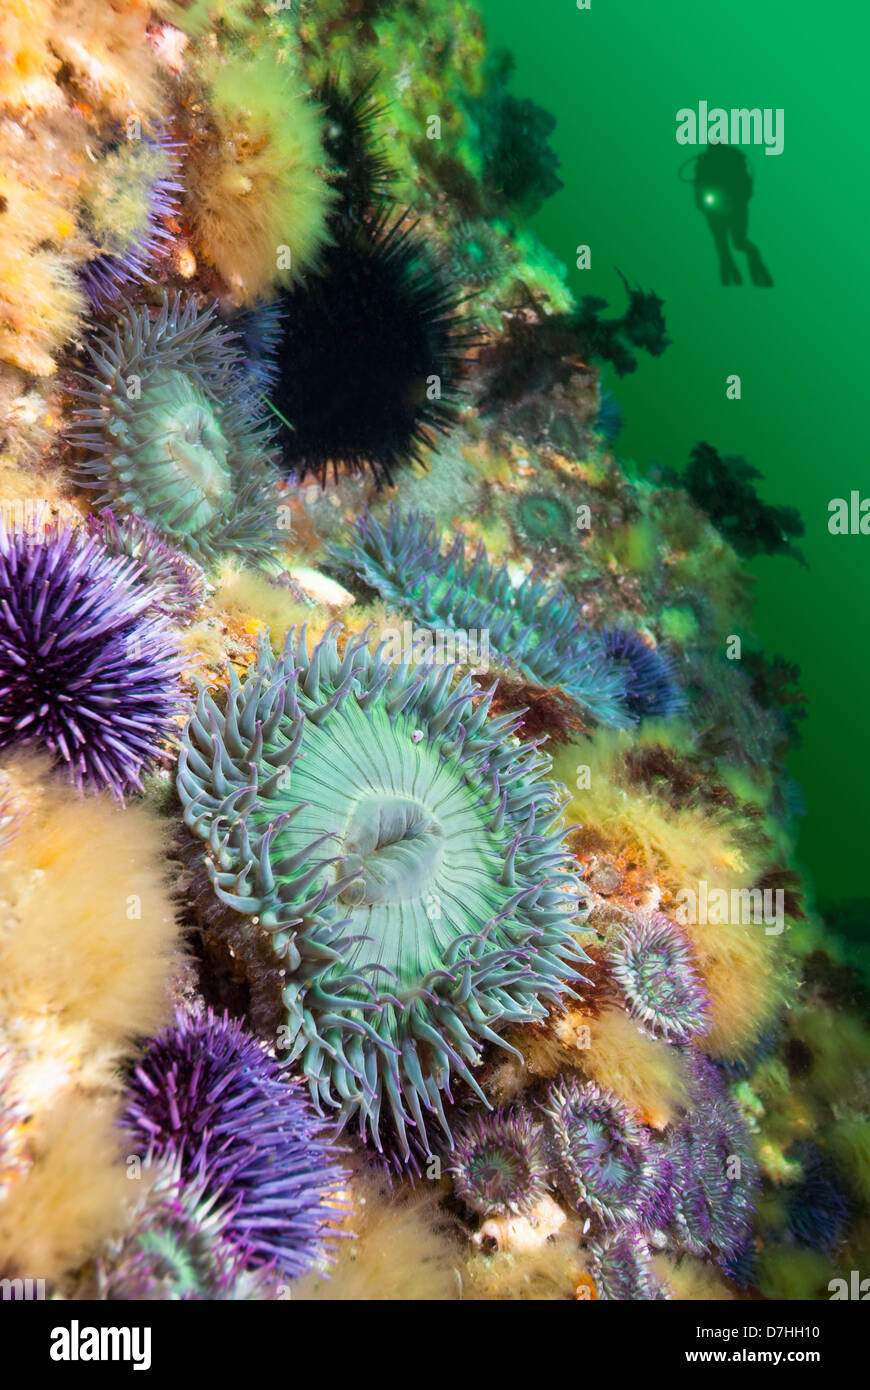 Eine Taucher Hoovers in der Nähe von einem bunten Riff mit Seeanemonen und Seeigel bedeckt. Stockfoto